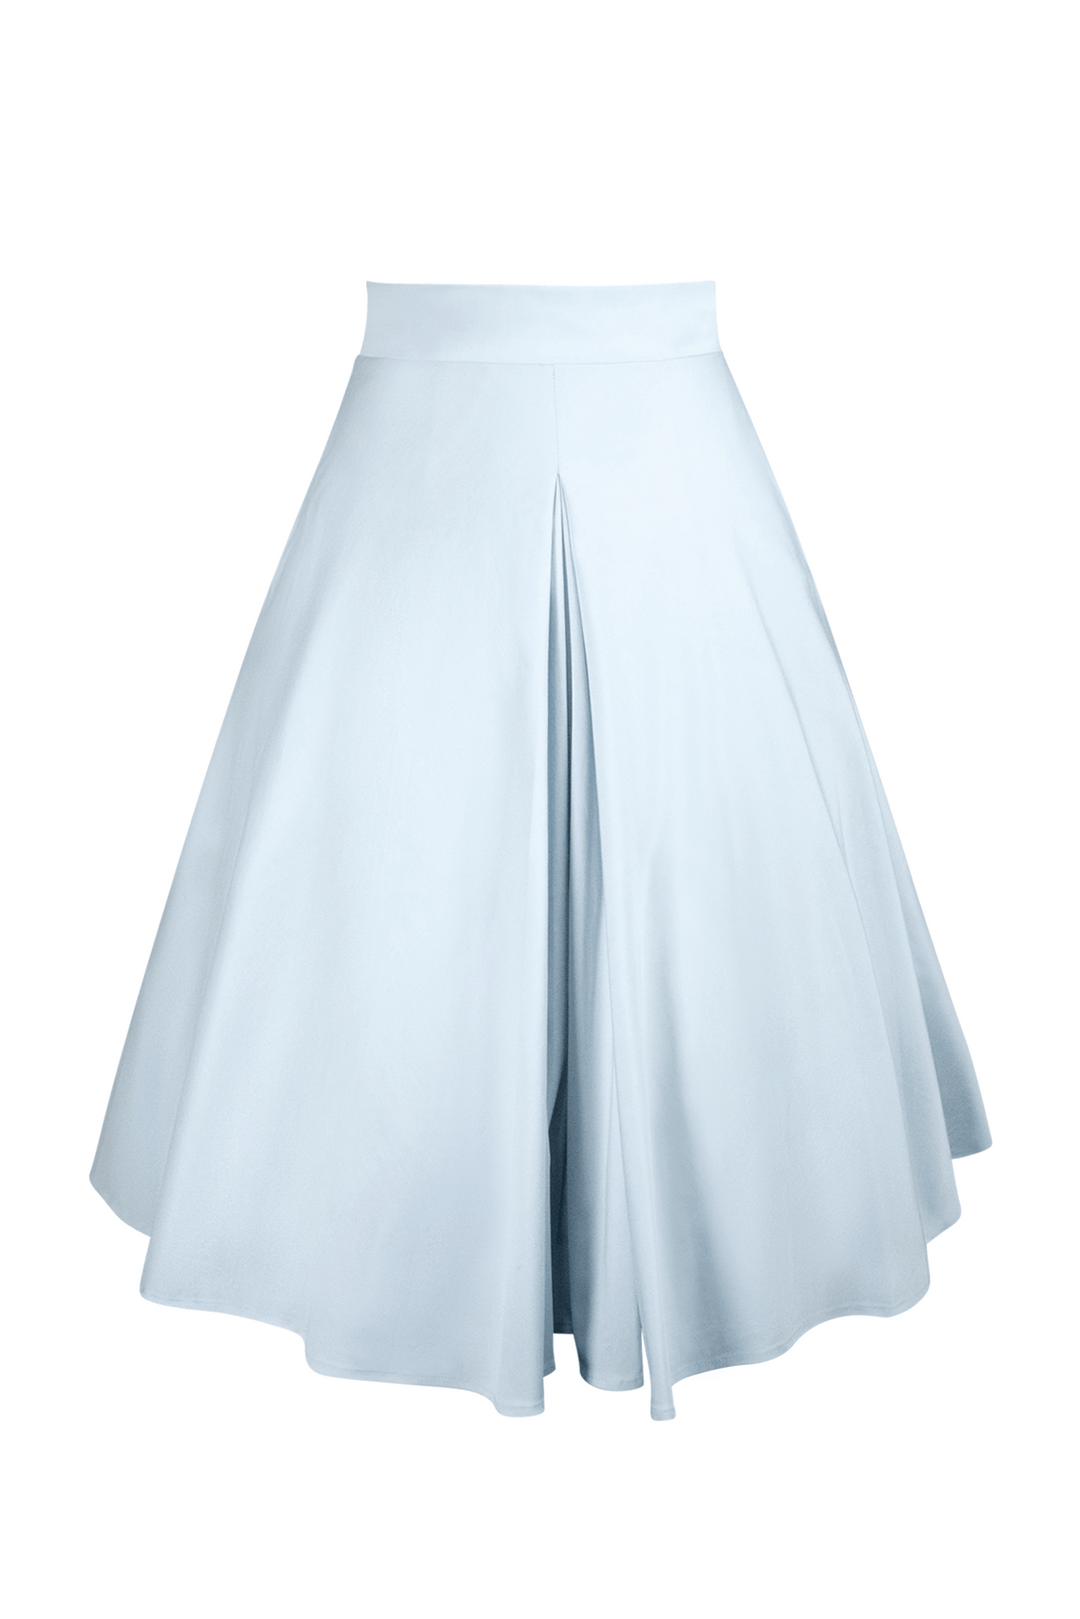 Tea Rose Classic Full Skirt (Blue) - Kitten D'Amour